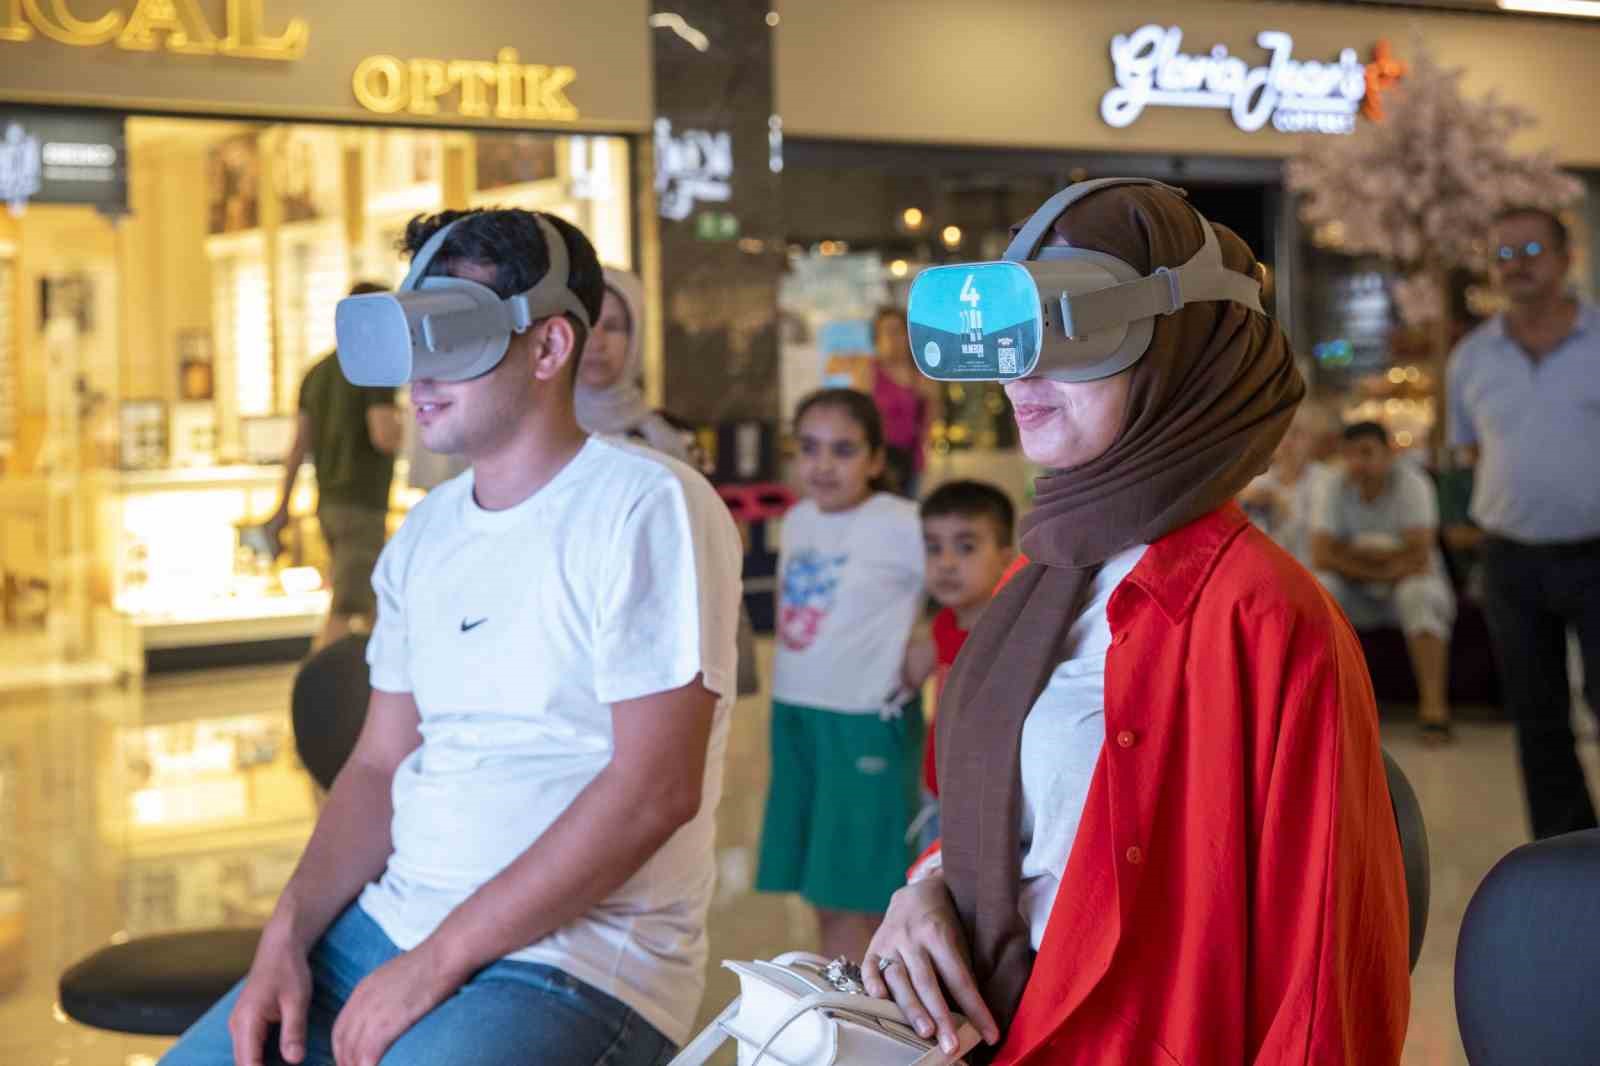 Mersin’in tarihi ve turistik yerlerini sanal gerçeklik gözlüğüyle keşfediyorlar
